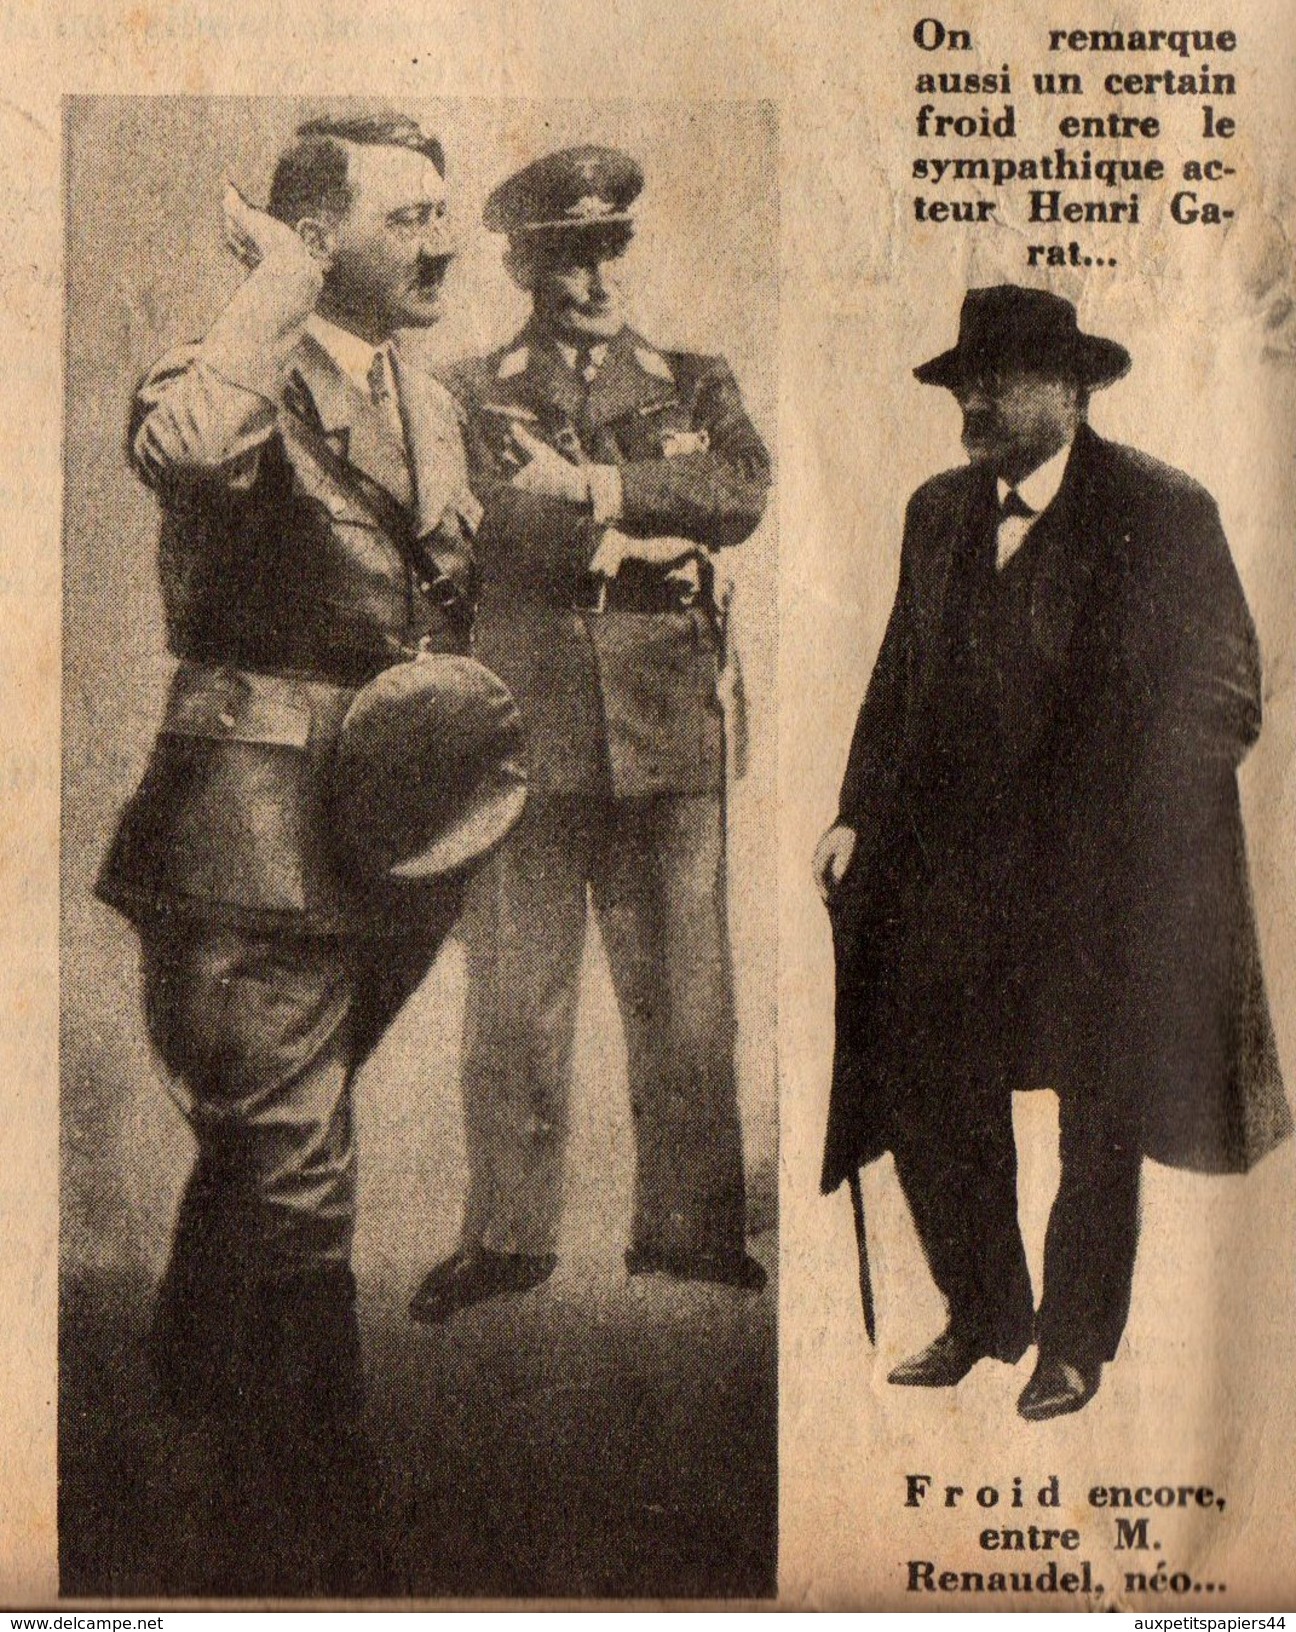 Journal MARIANNE du Mercredi 16.12.1933 - 2ème Année N°59 - Caricatures, Pub & Propagande Nazi pour Hitler ! 16 pages